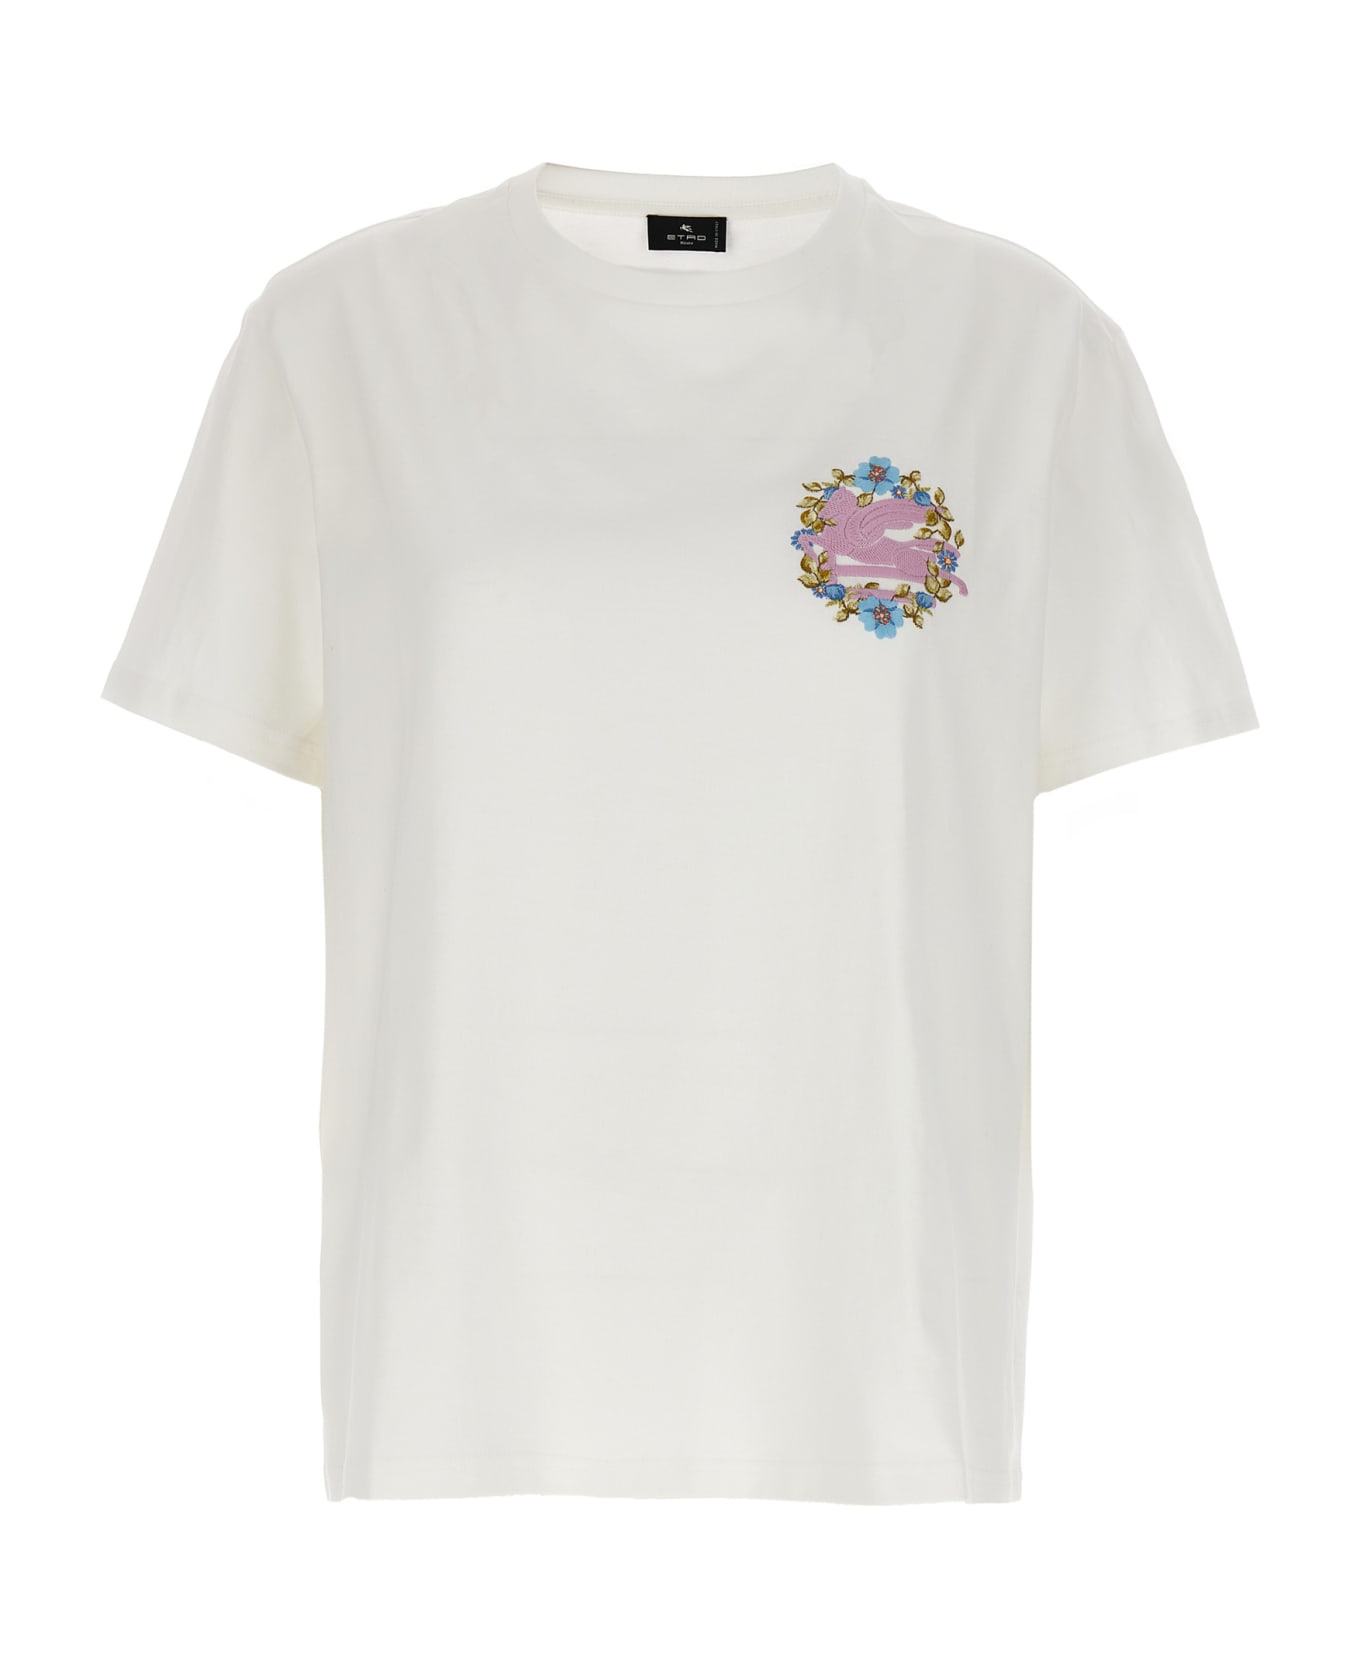 Etro Logo Embroidery T-shirt - White